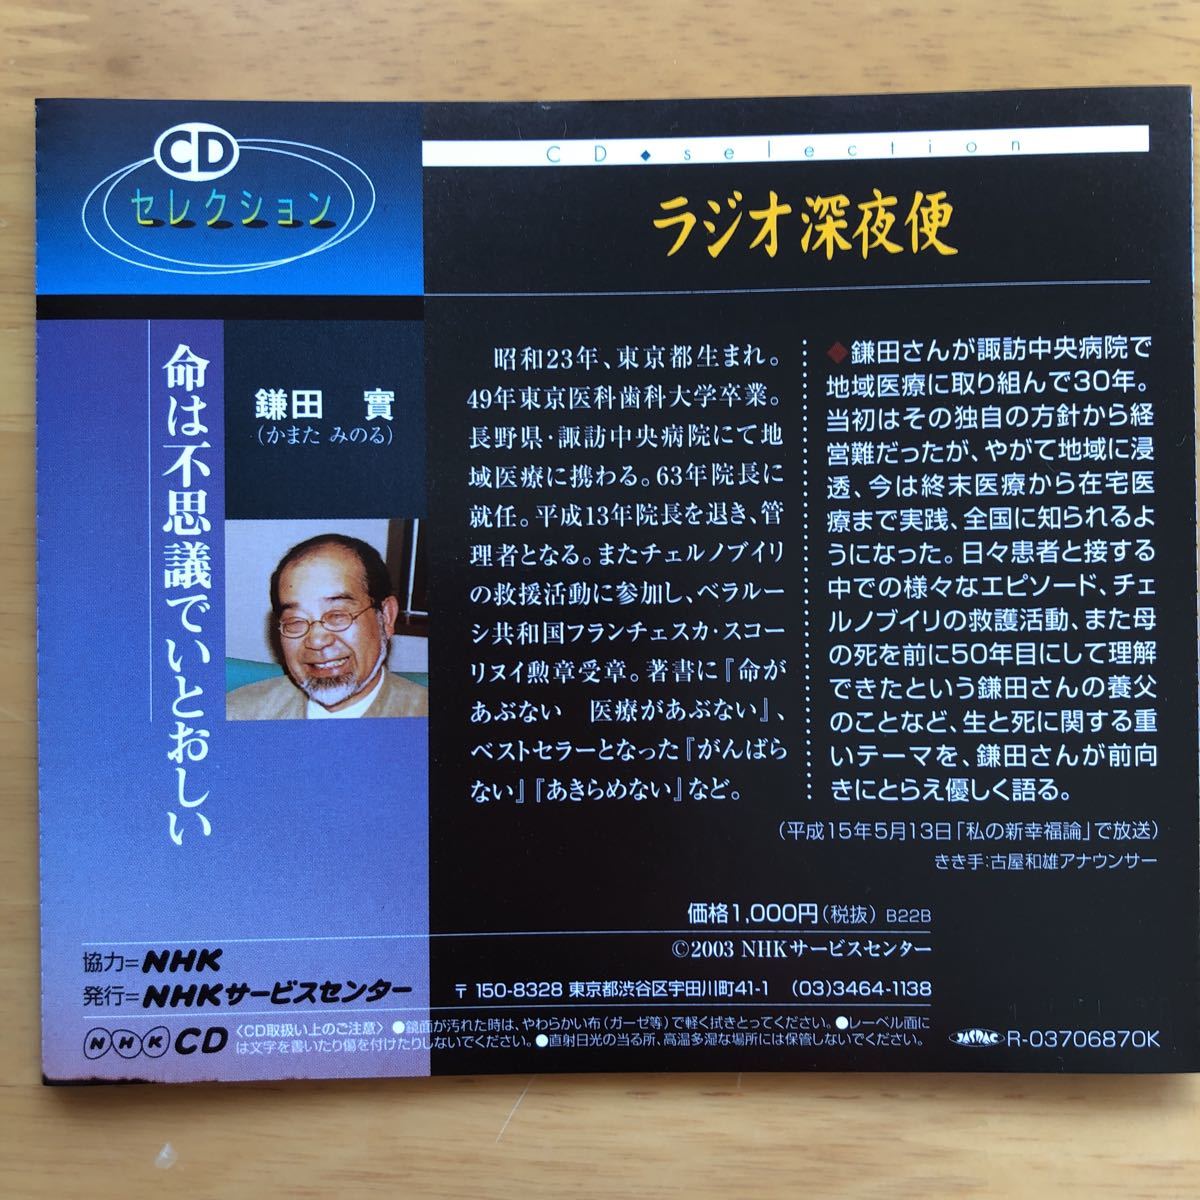  радио поздно ночью рейс [ жизнь. тайна ......] серп рисовое поле .NHK CD